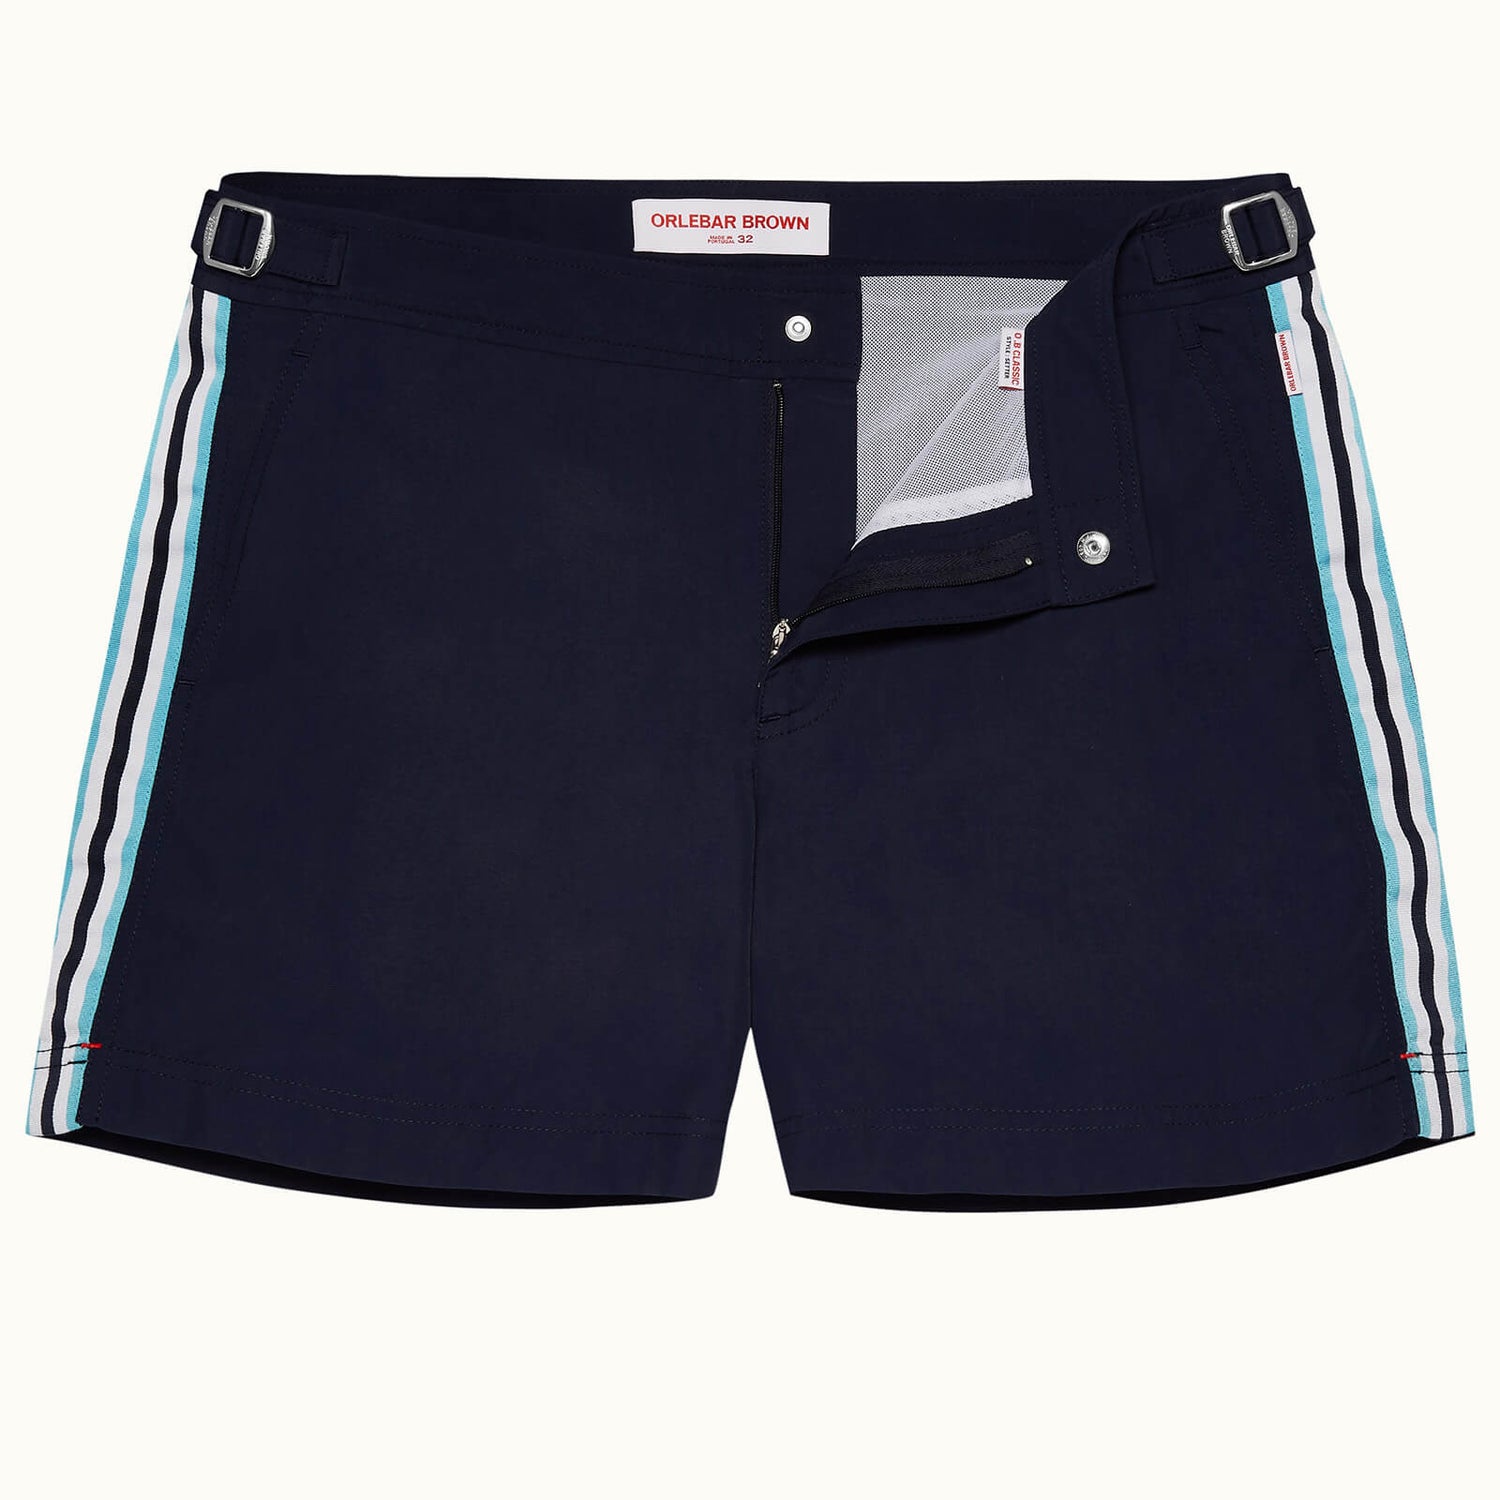 Setter 系列短款条带设计游泳短裤 - 海军蓝色